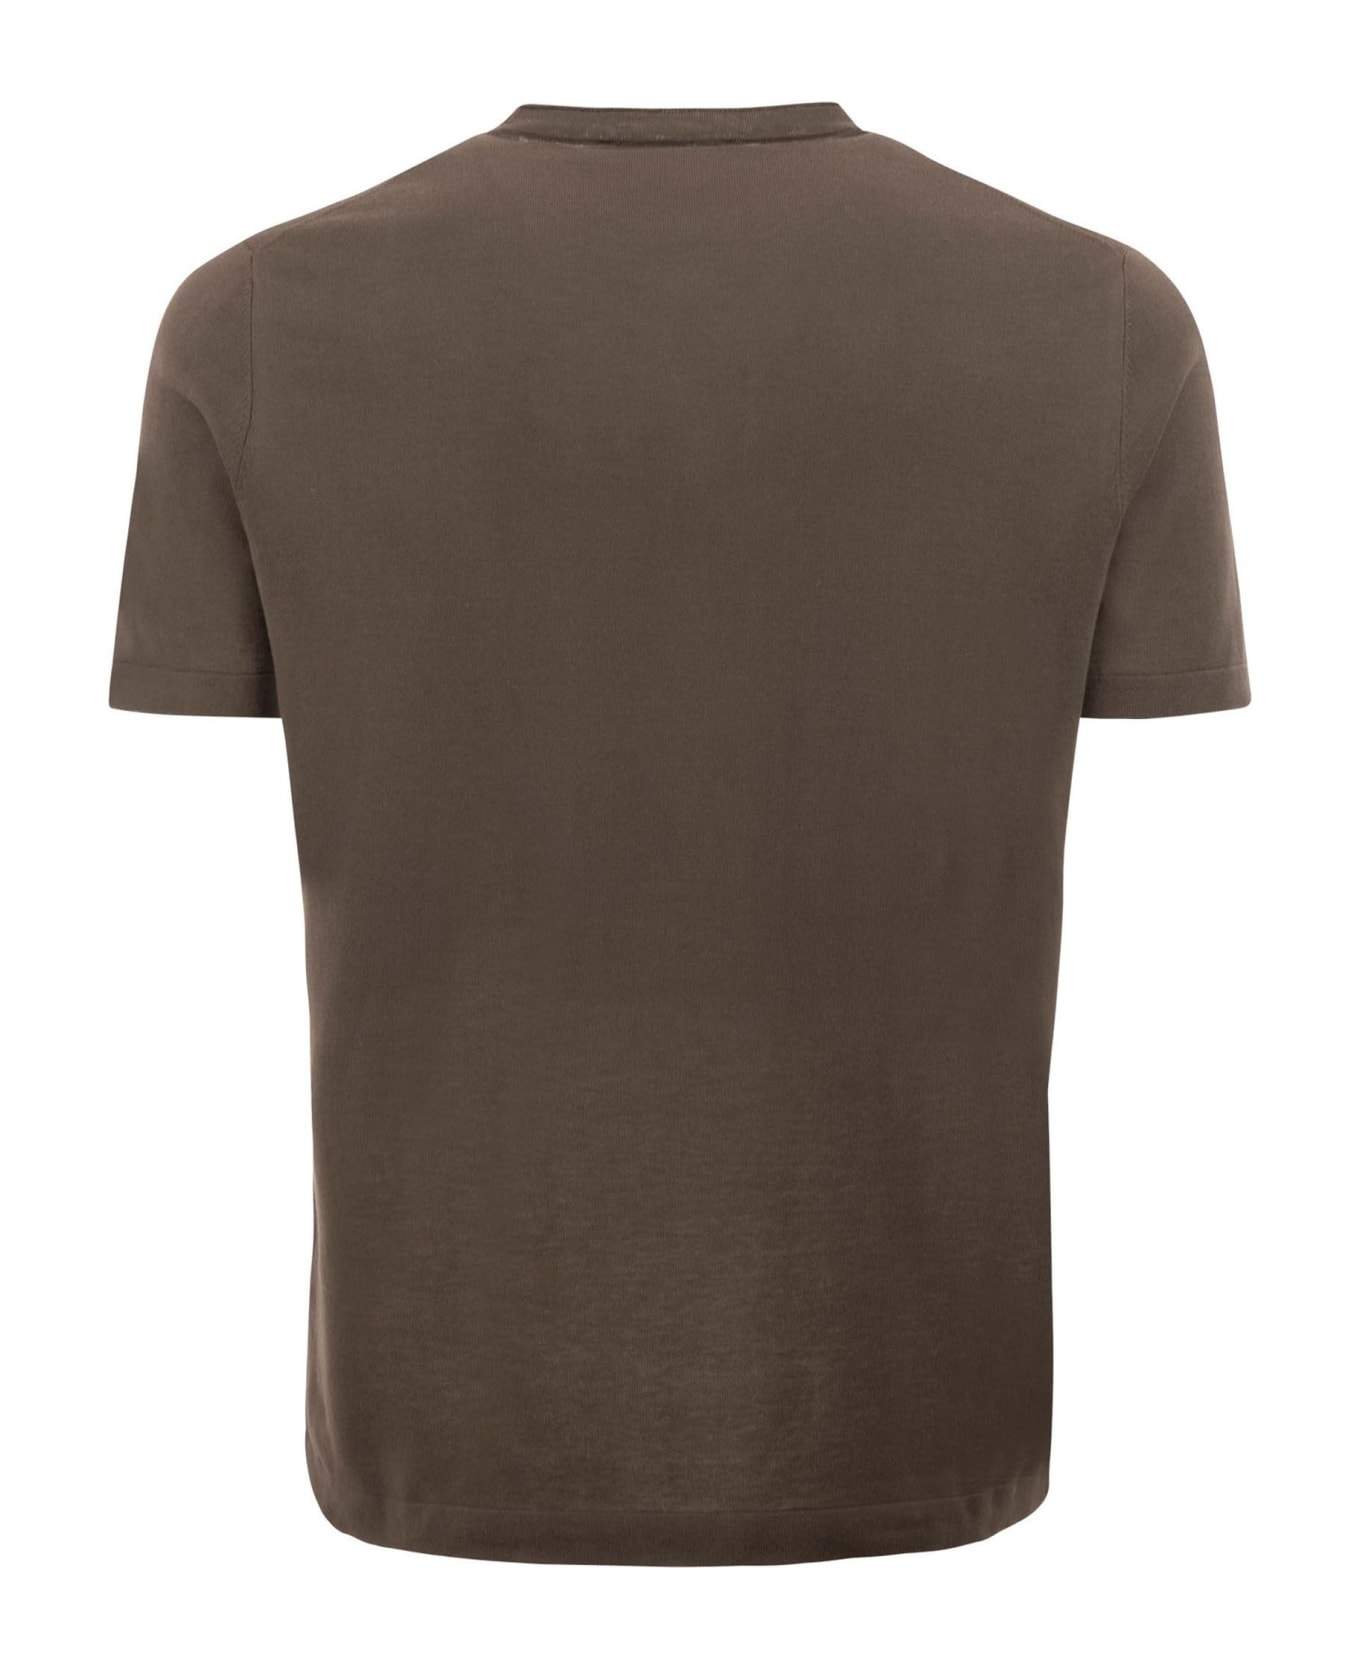 Kangra Brown Cotton Ribbed T-shirt - Brown シャツ